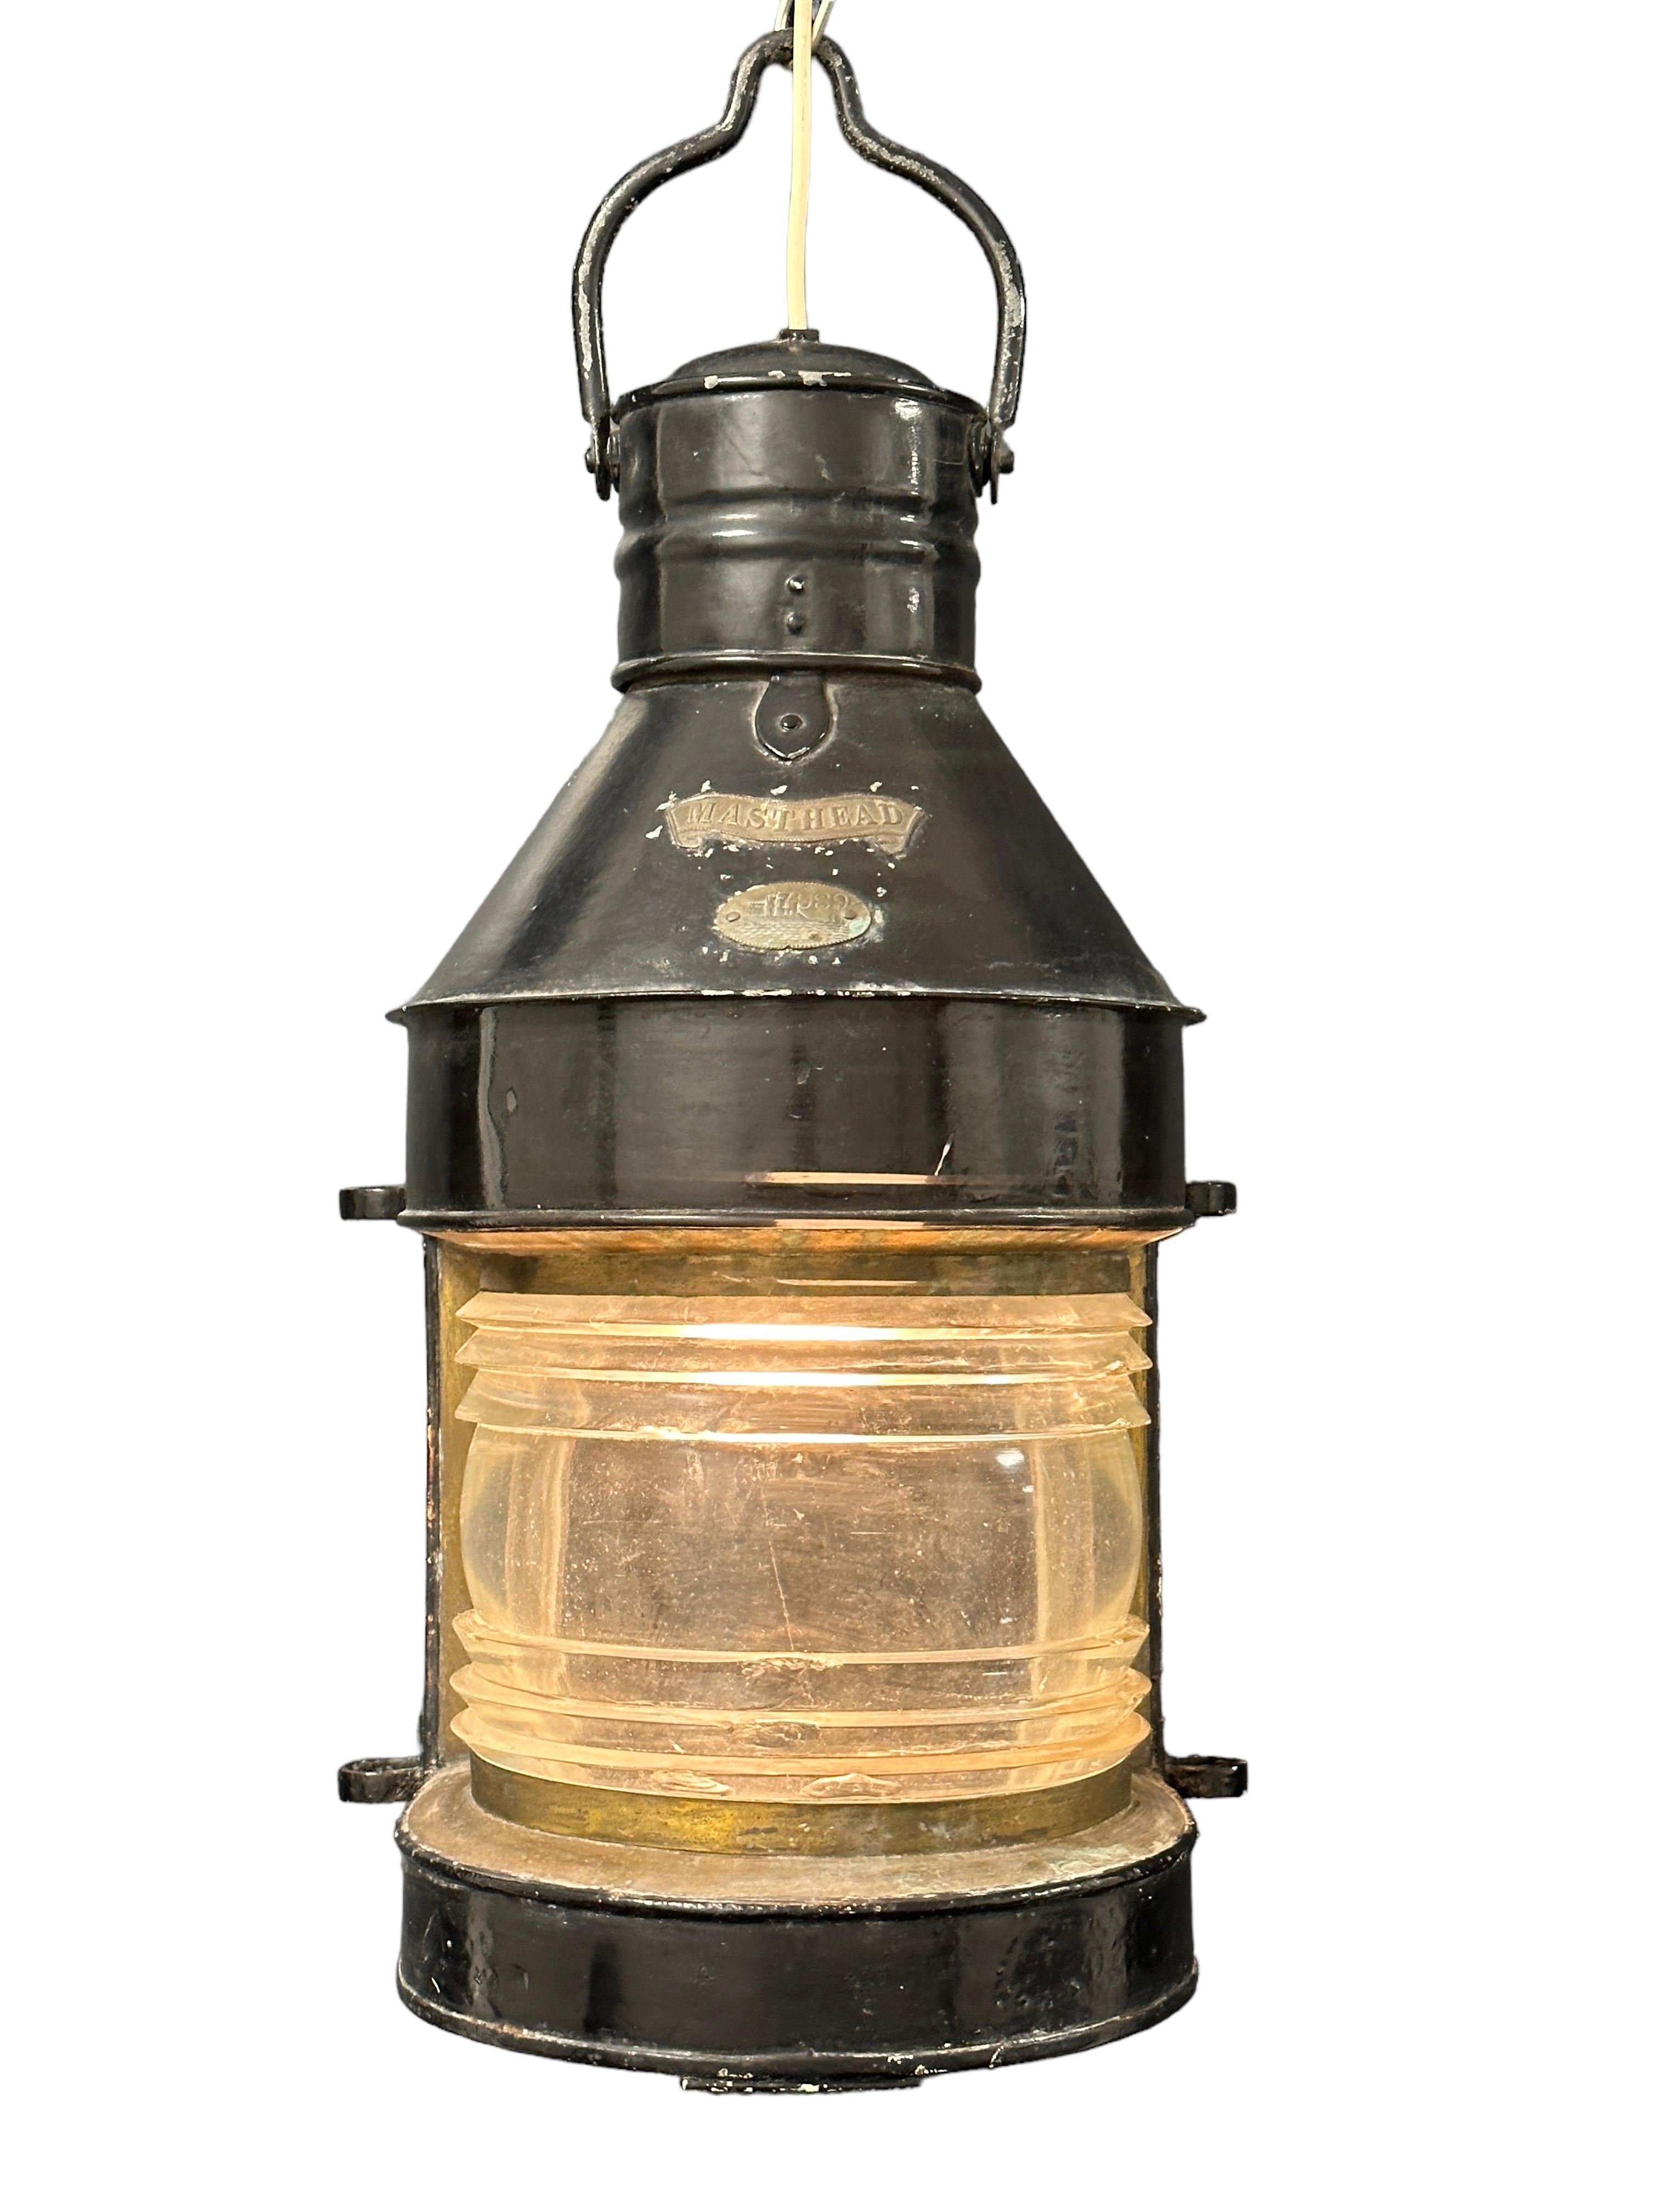 Il s'agit d'une grande lampe de mât nautique 7989 en métal massif et en laiton avec lentille de Fresnel. Avec la poignée de transport, il mesure environ 28,5